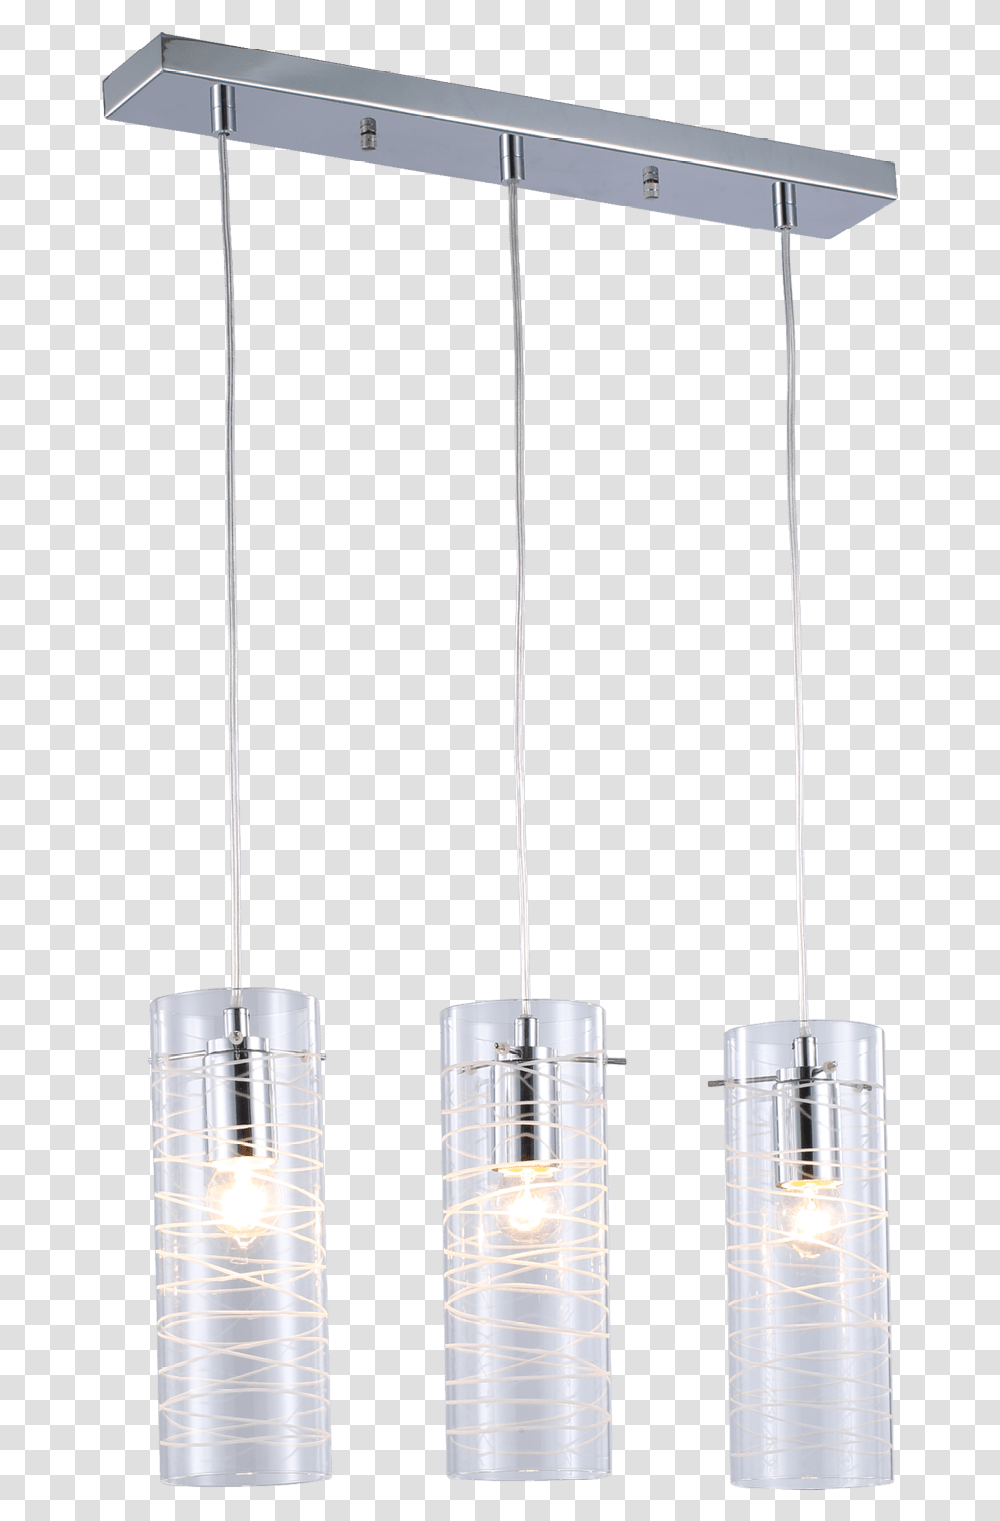 Martel 3 Light Pendant Ceiling Fixture, Cylinder, Light Fixture, Utility Pole, Lamp Transparent Png